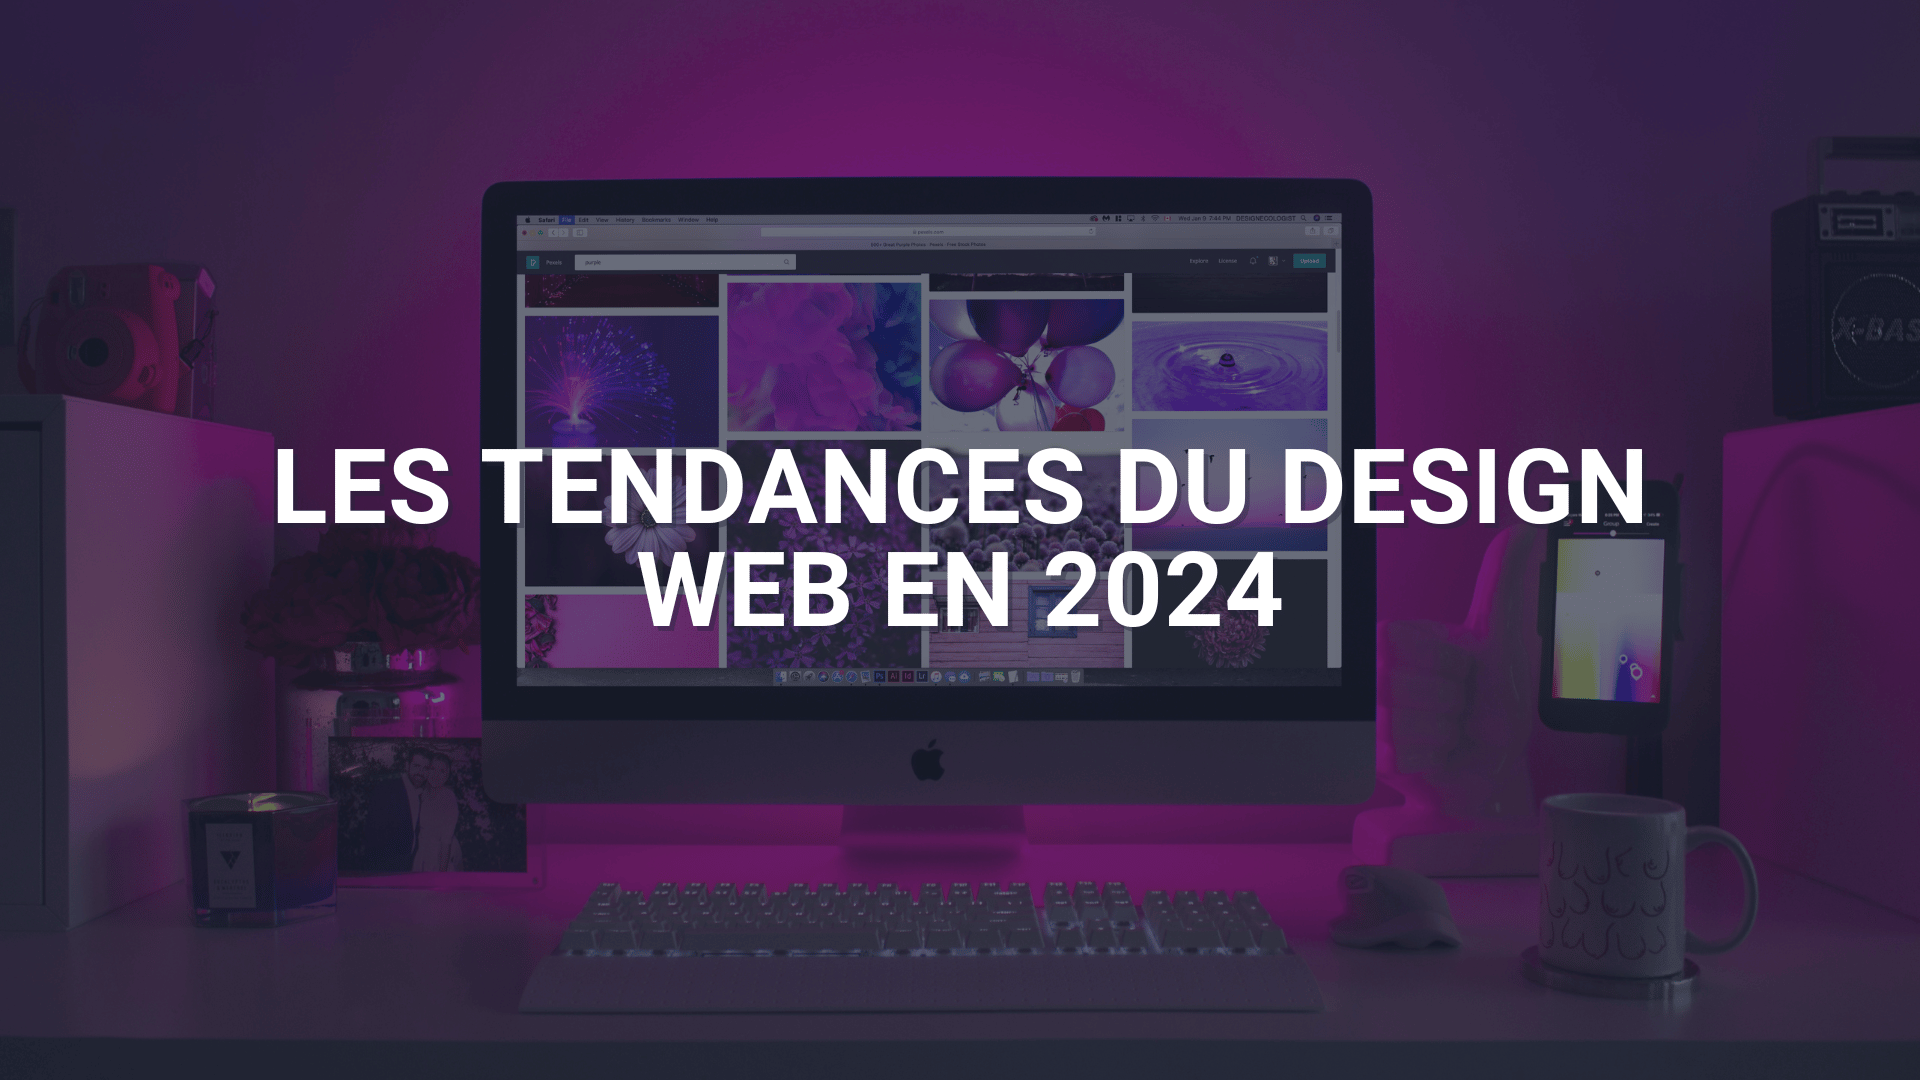 Les tendances du design web en 2024 pour une agence Web